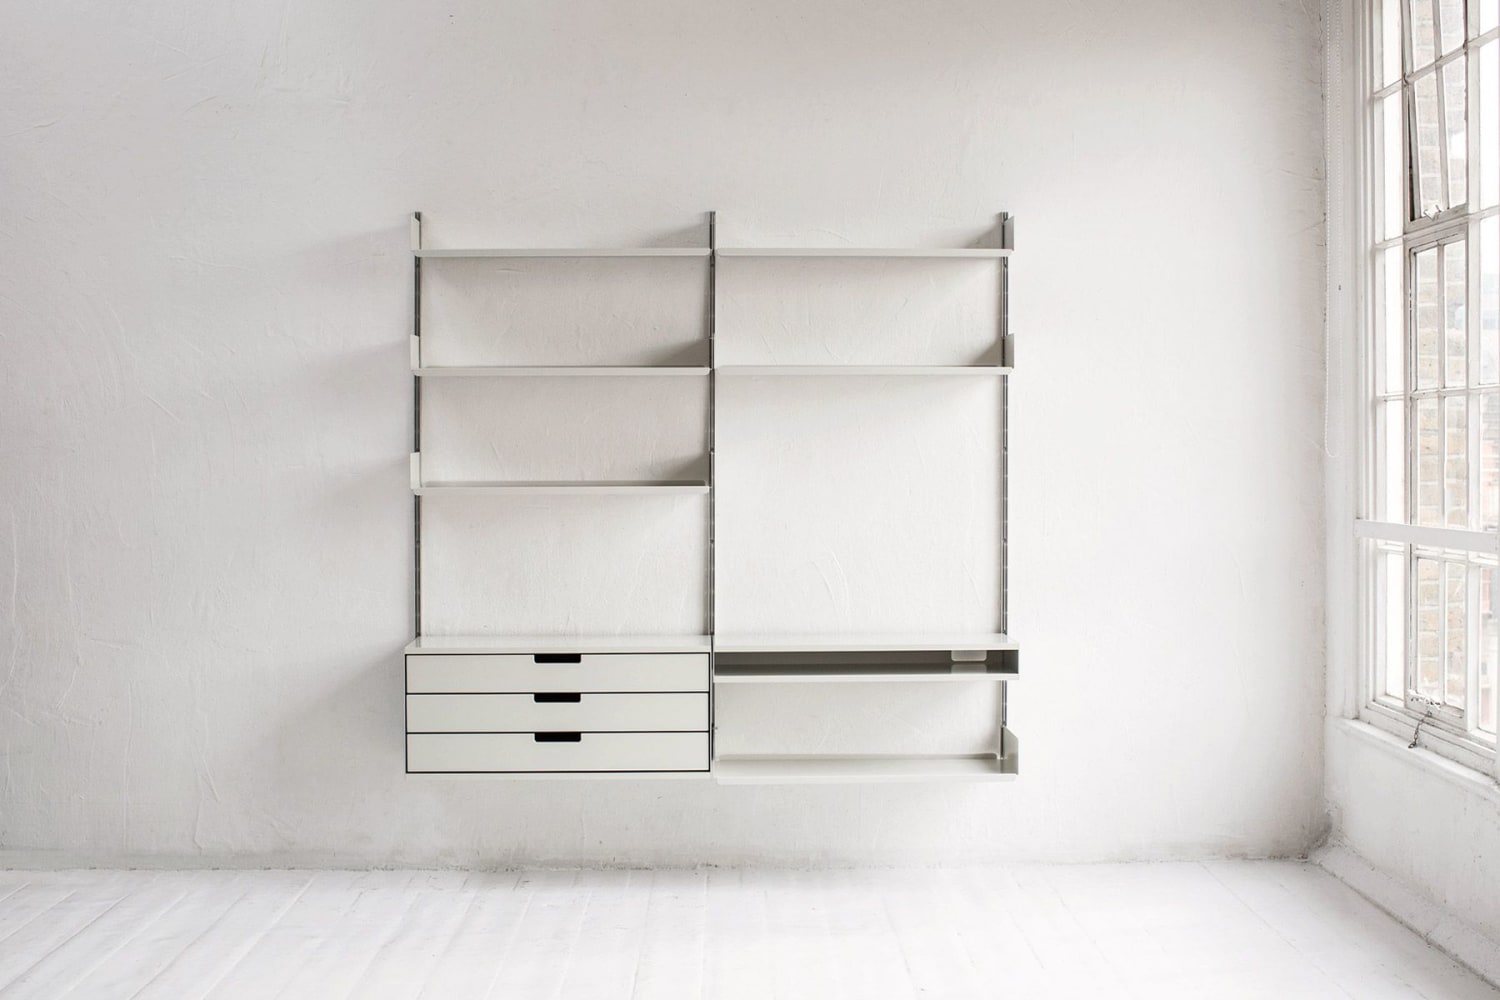 Vitsoe – Invisible Design | Design, Interior architecture design, Shelves